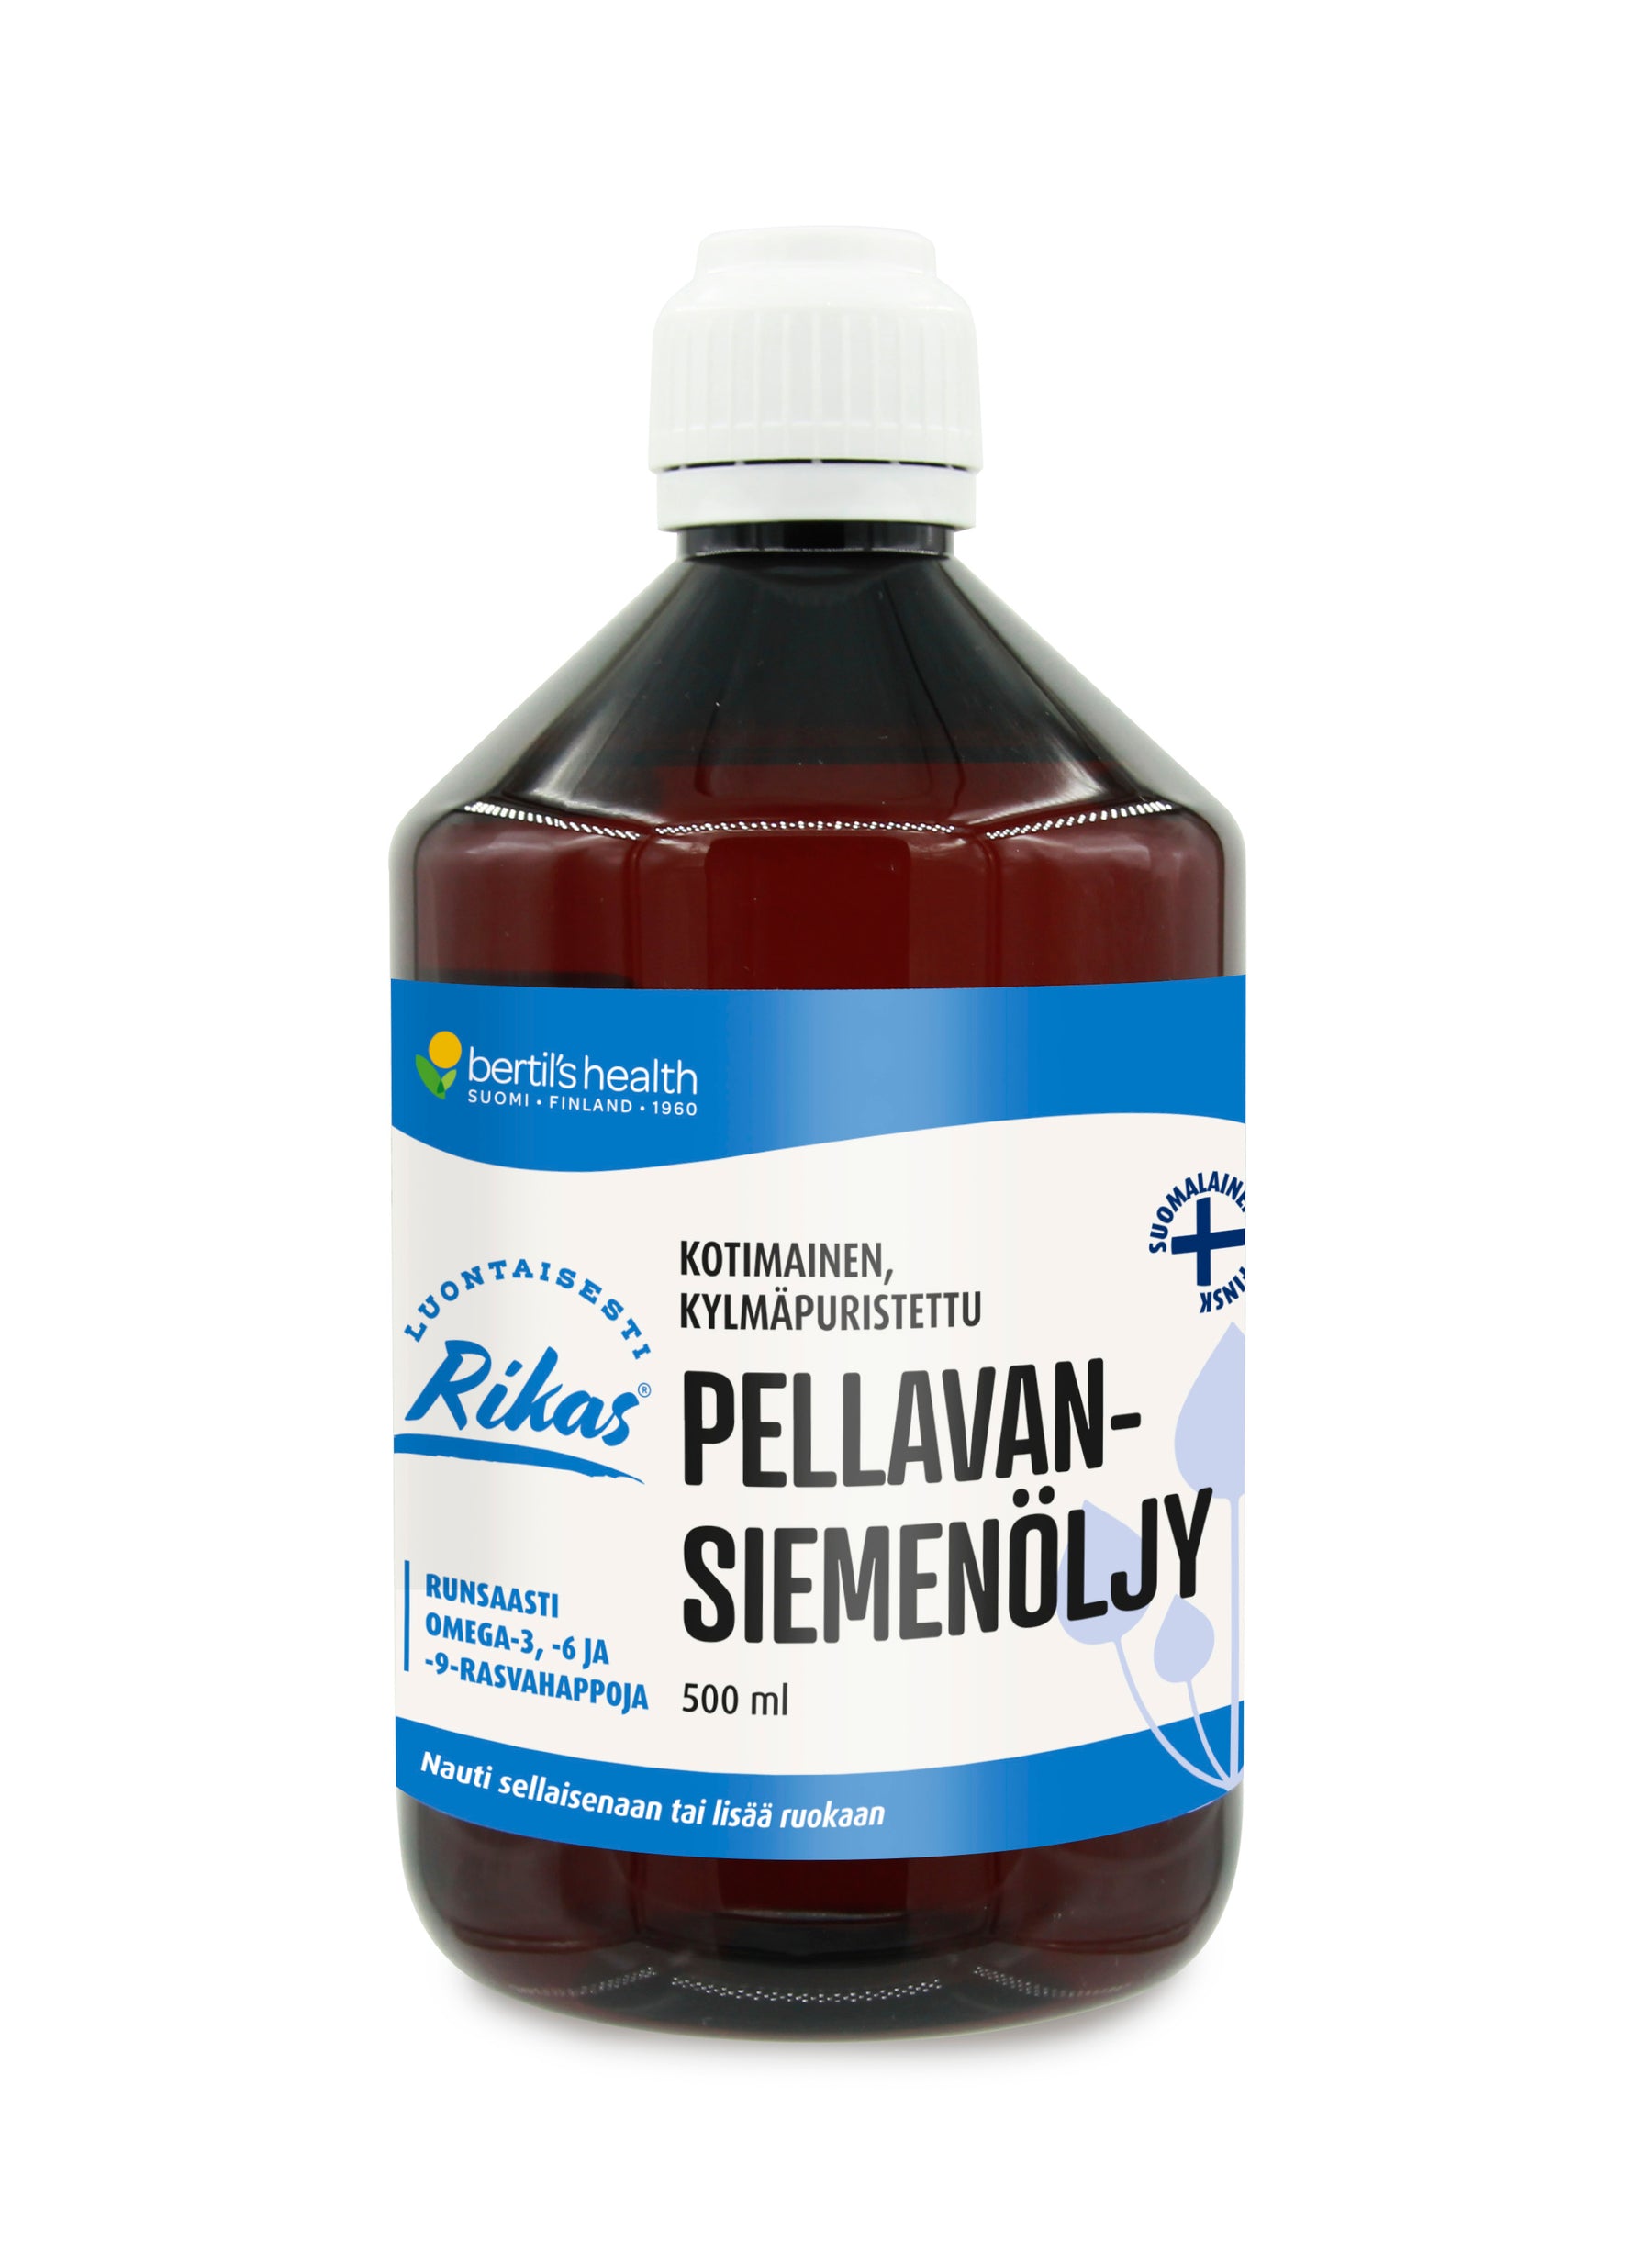 Bertil's Health Kotimainen Kylmäpuristettu Pellavansiemenöljy 500 ml - Päiväys 09/2024